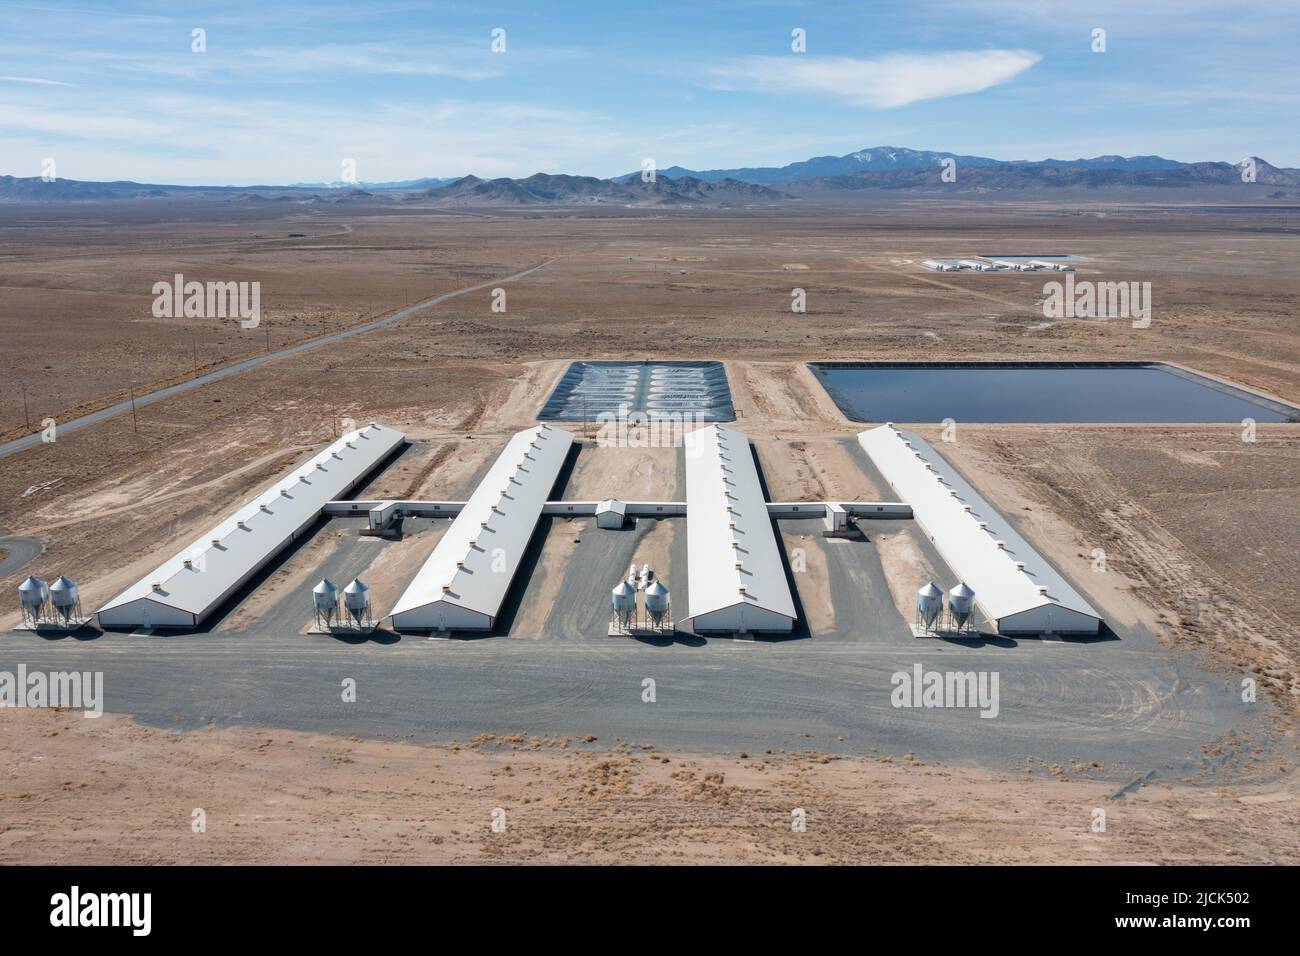 Un impianto di allevamento di zoccoli Smithfield Farms con lagune per convertire i rifiuti di zoccoli in biogas ad energia rinnovabile. Milford, Utah. Foto Stock